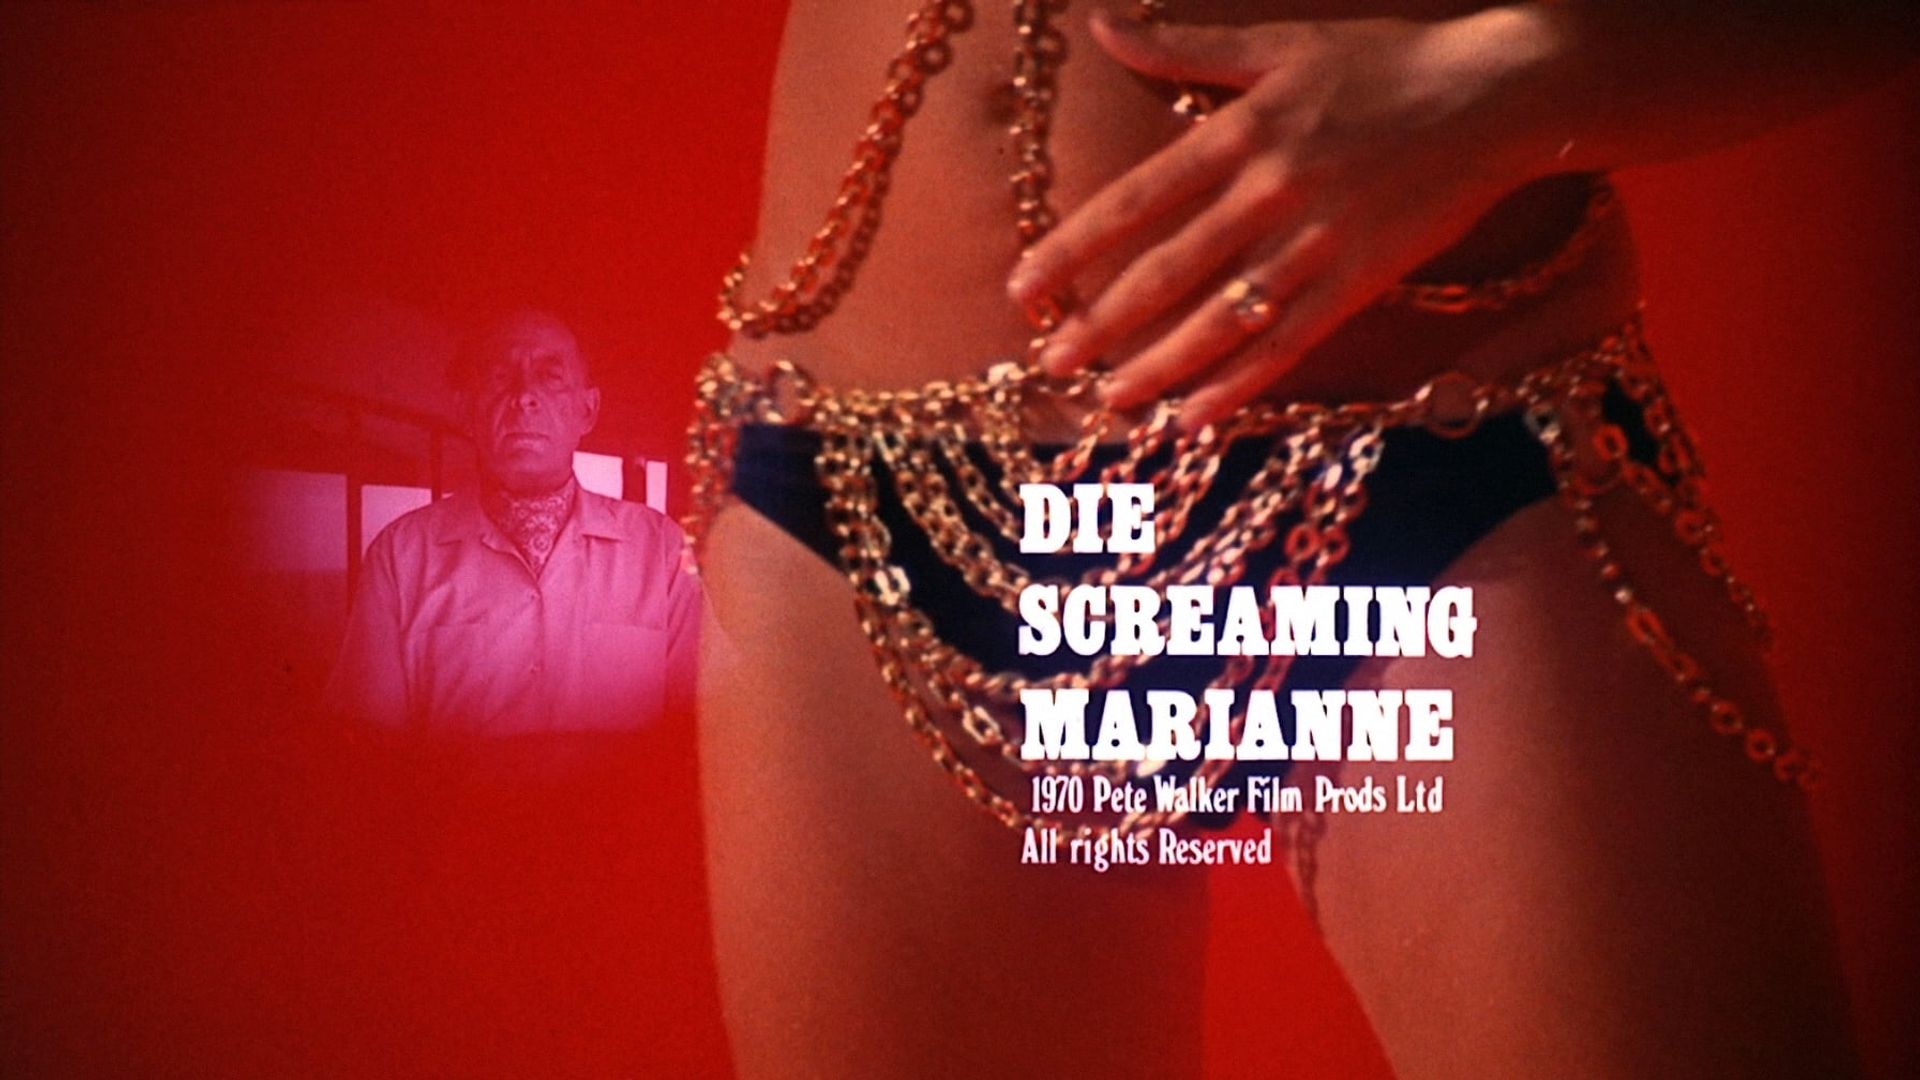 Die Screaming Marianne Backdrop